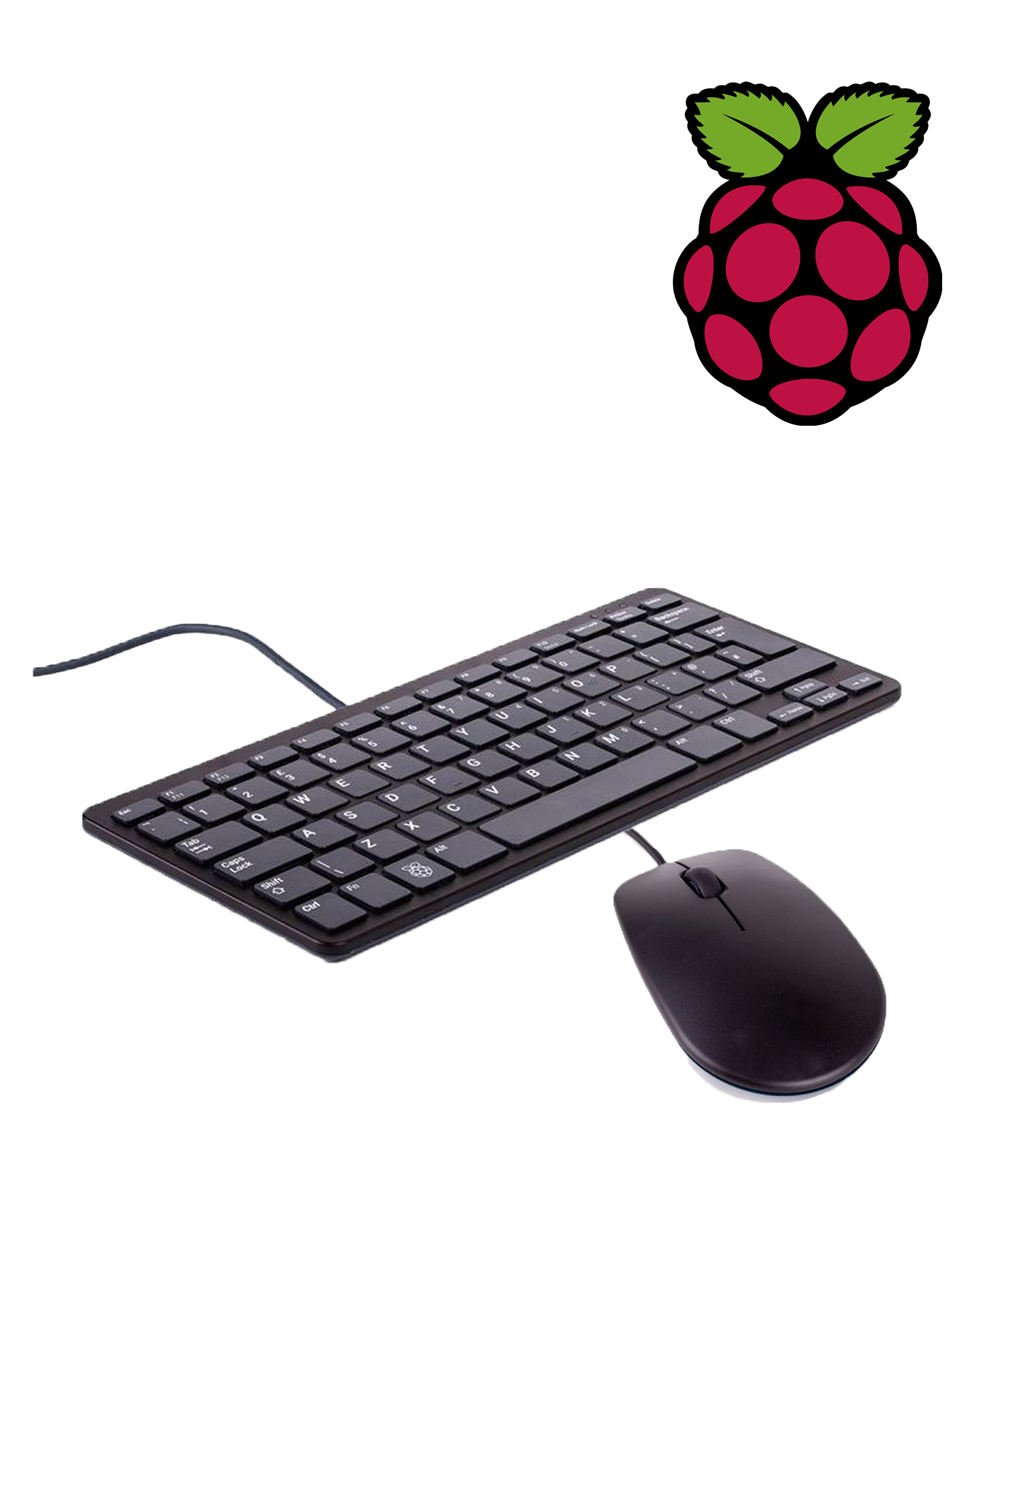 Offizielle Raspberry Pi Tastatur mit Maus - schwarz/grau